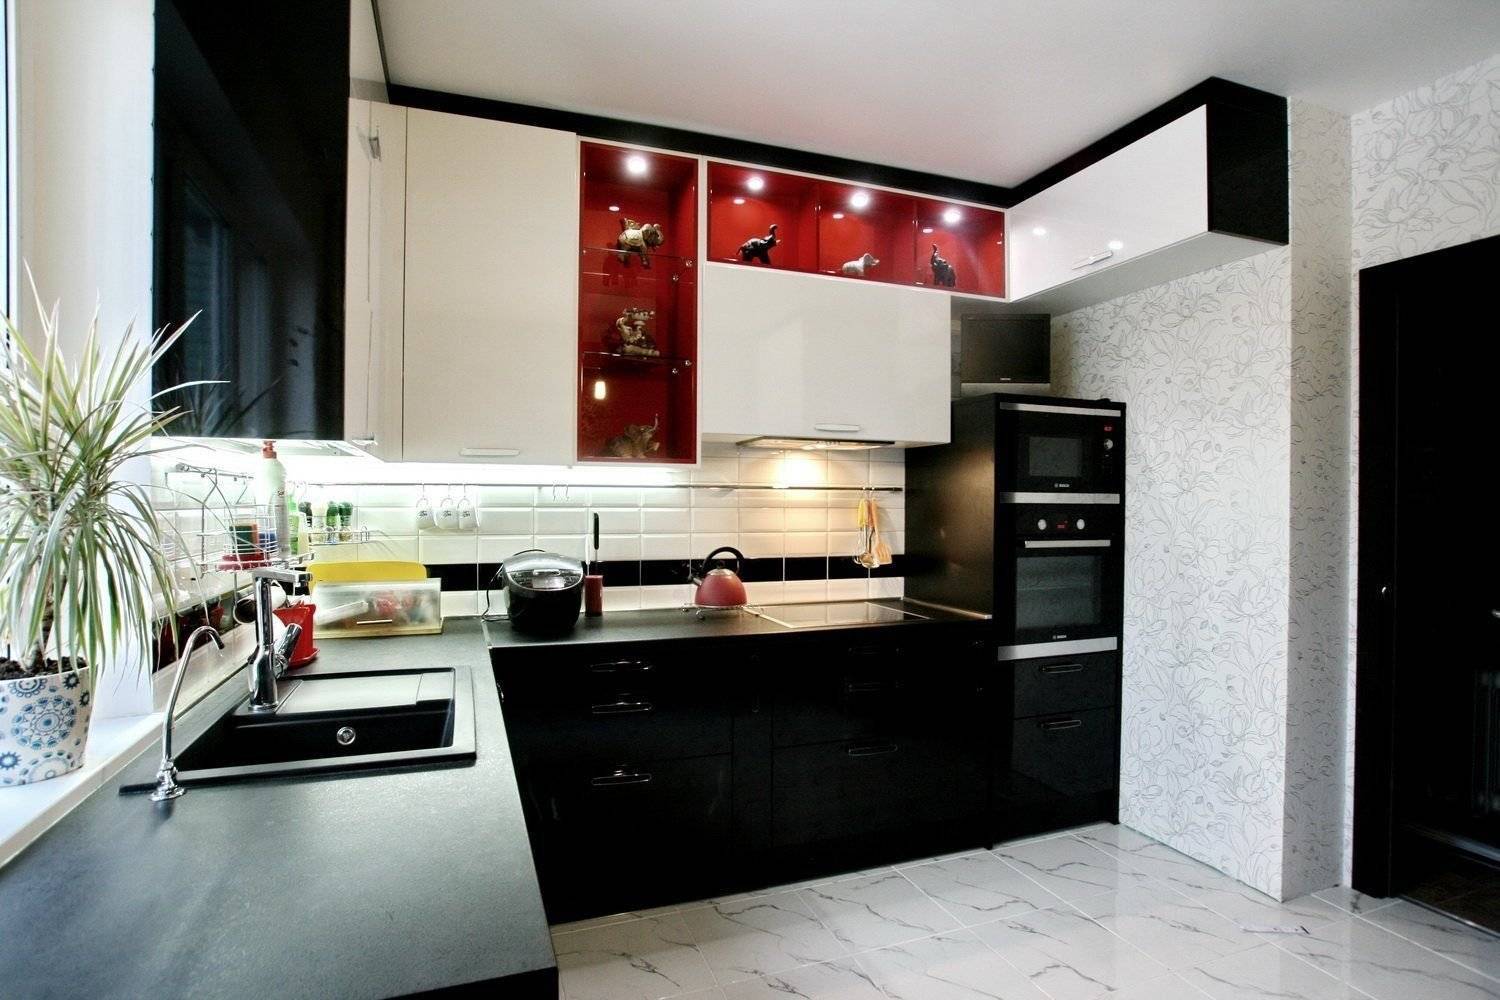 Черно-белая кухня, преимущества дизайна - фото примеров